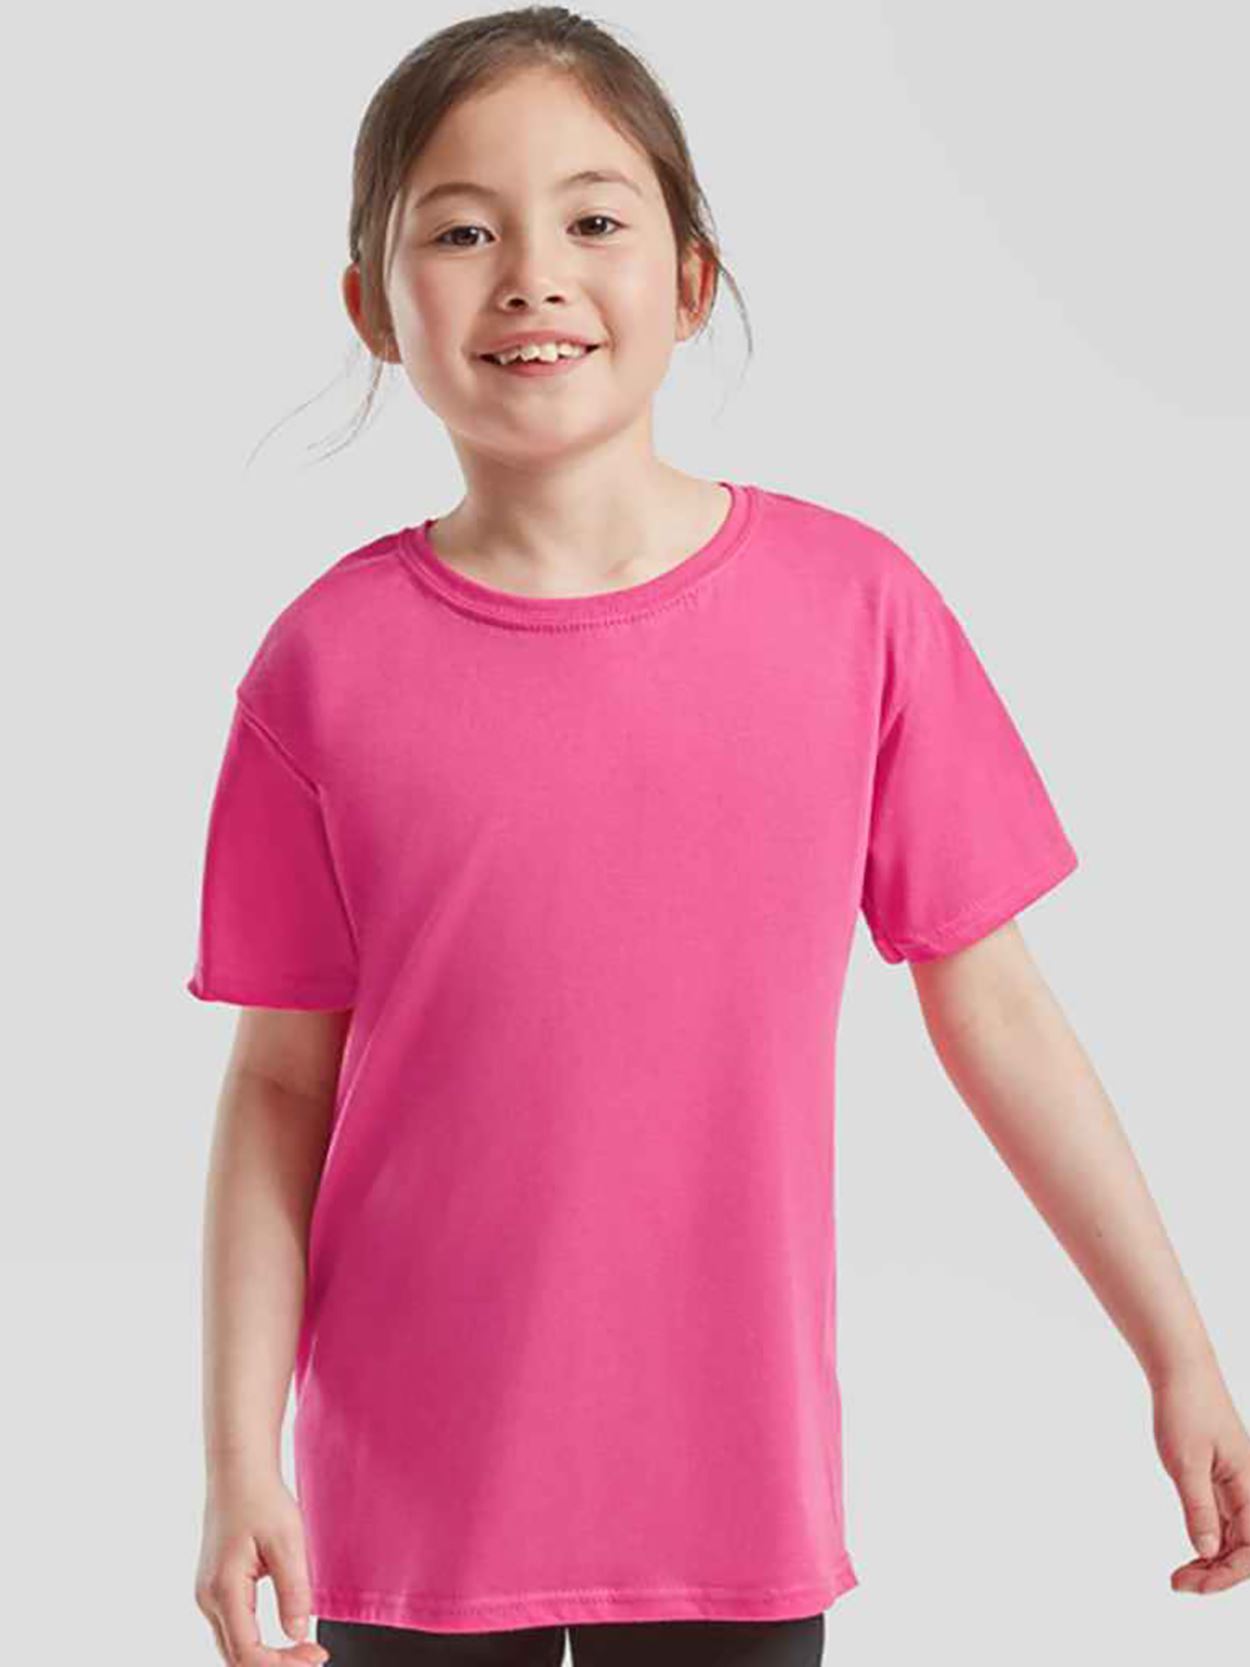 ss150b 610230 Kids Iconic 150 T-Shirt Image 3